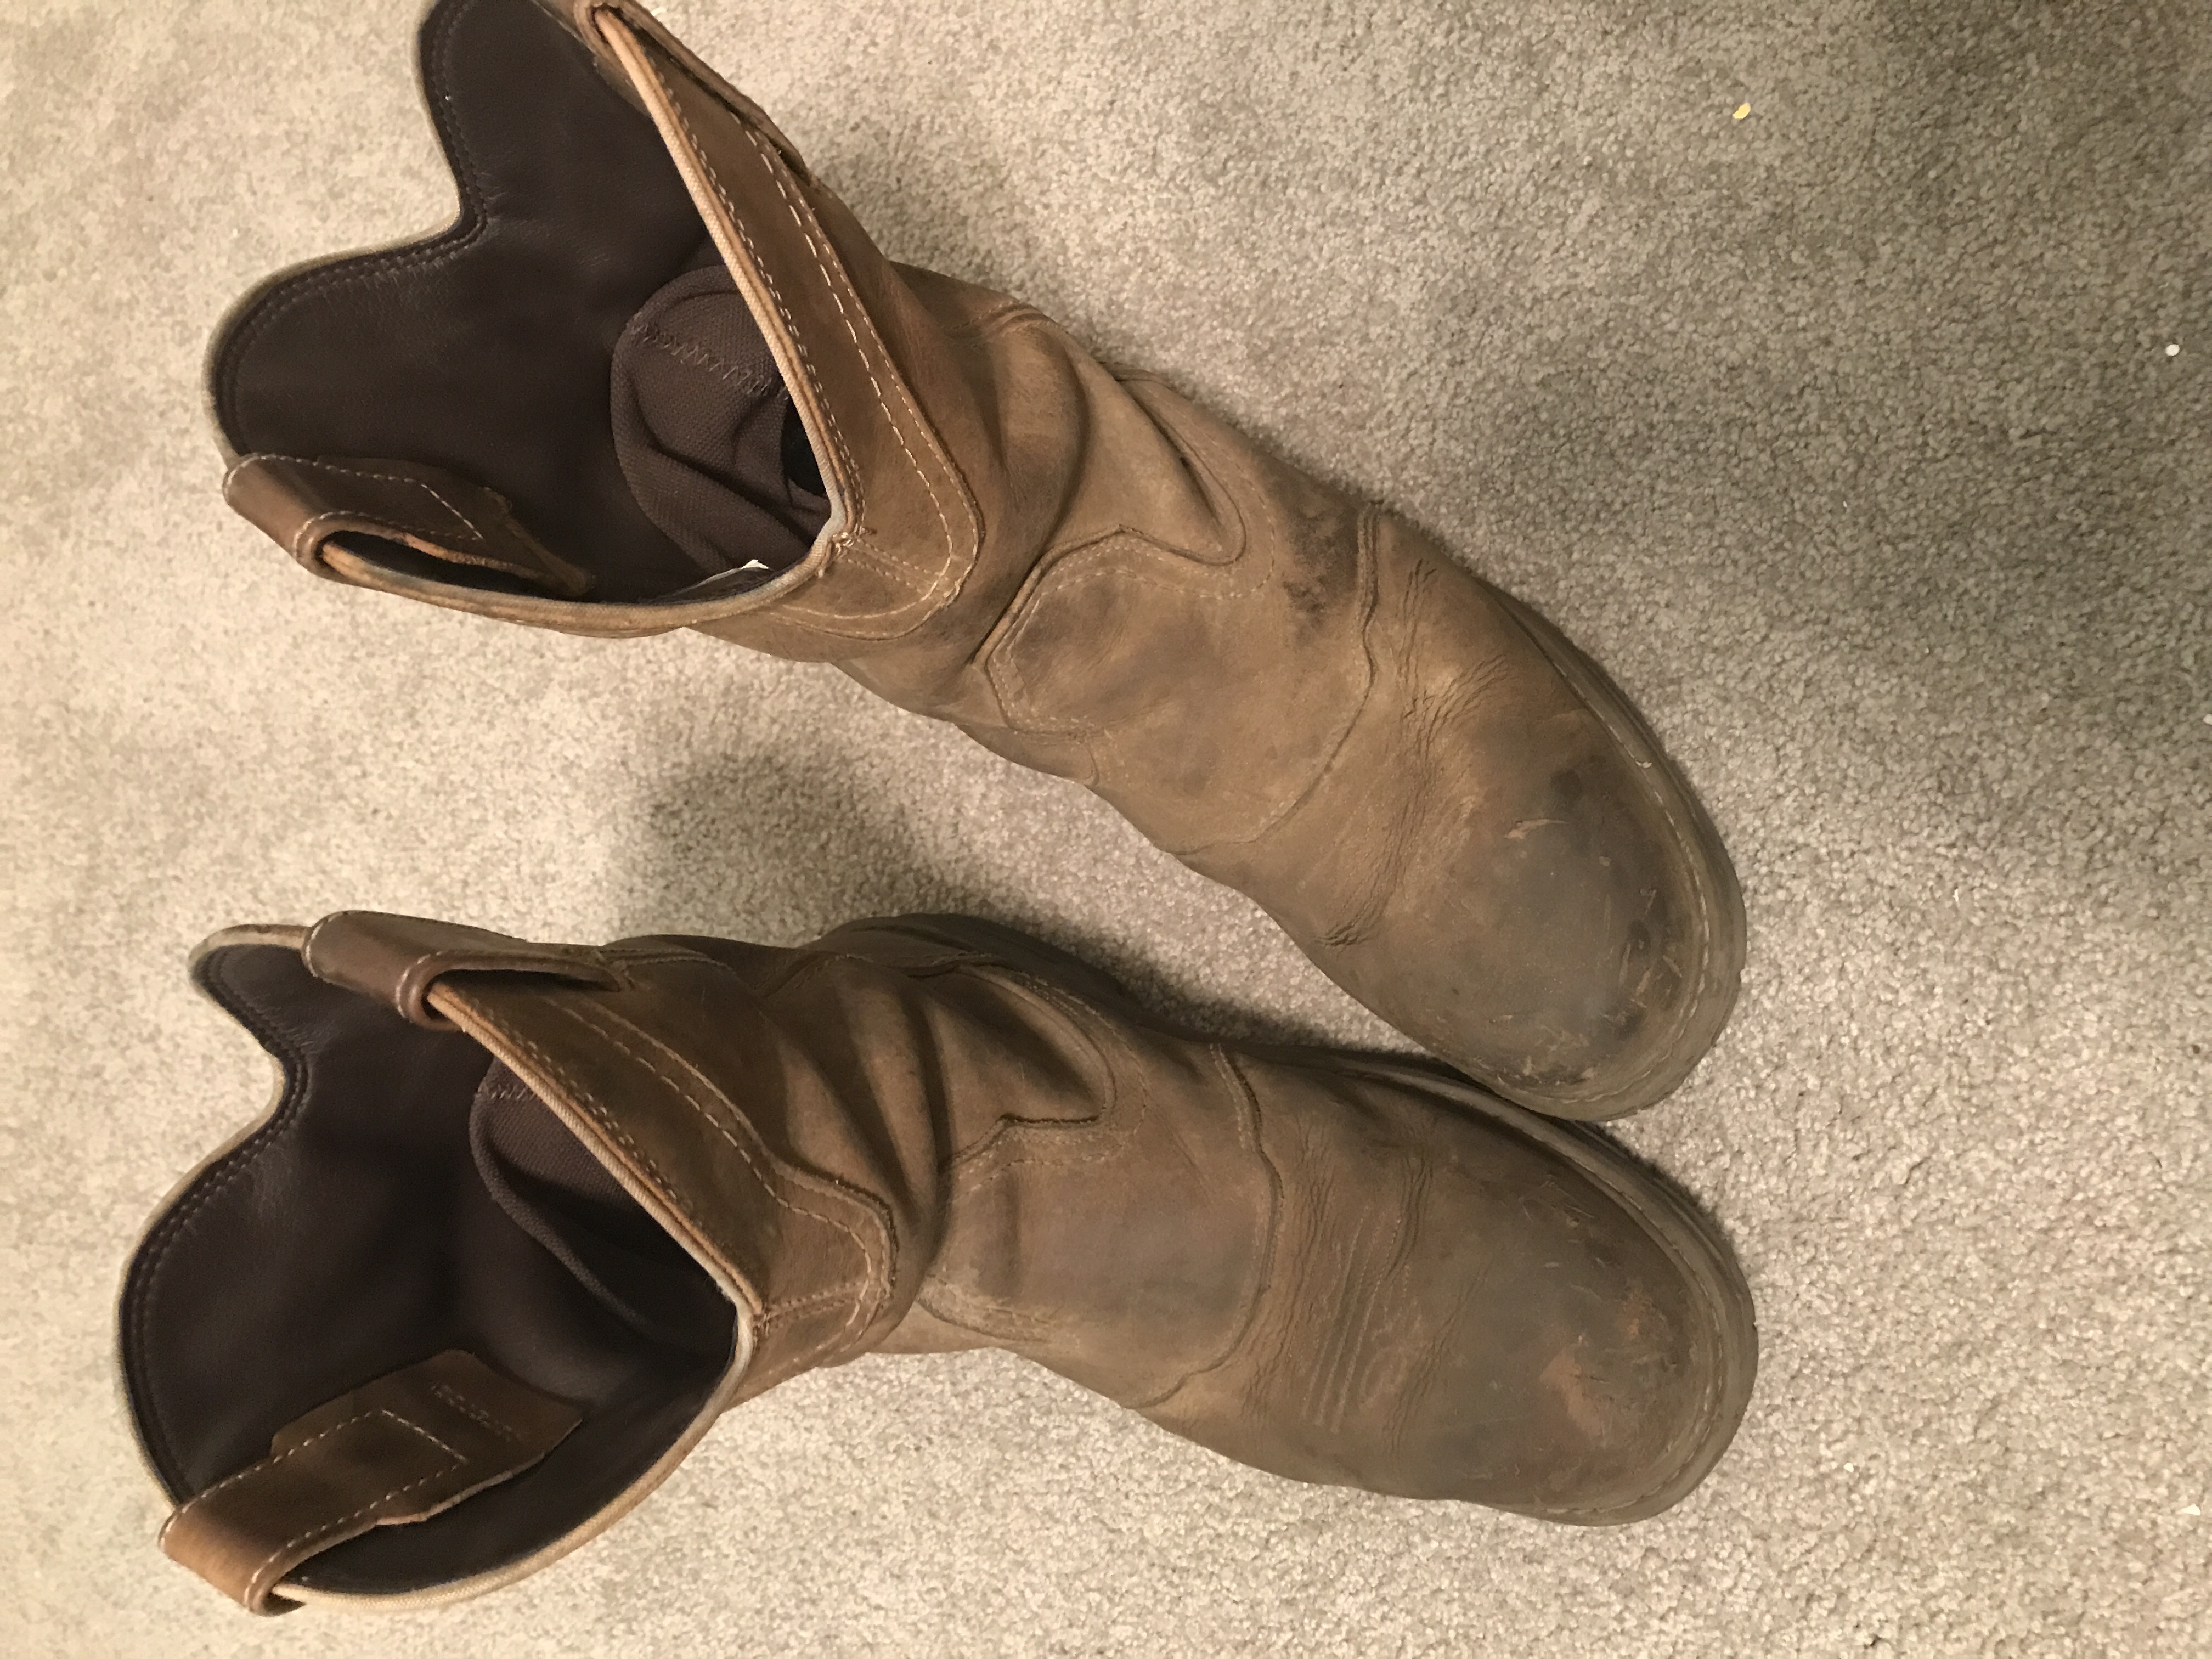 wolverine western work boots